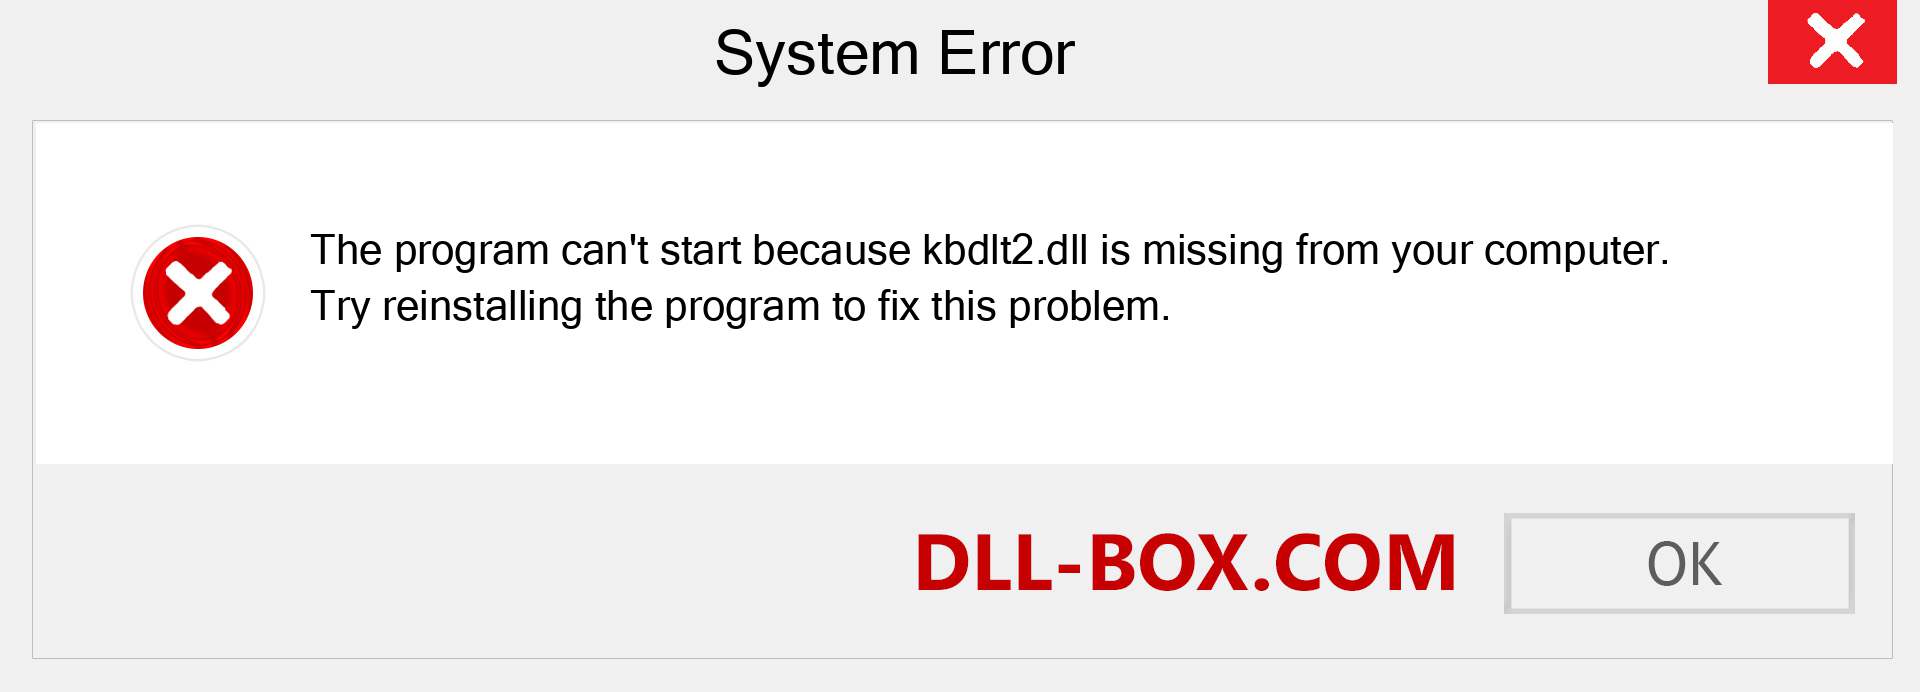  kbdlt2.dll file is missing?. Download for Windows 7, 8, 10 - Fix  kbdlt2 dll Missing Error on Windows, photos, images